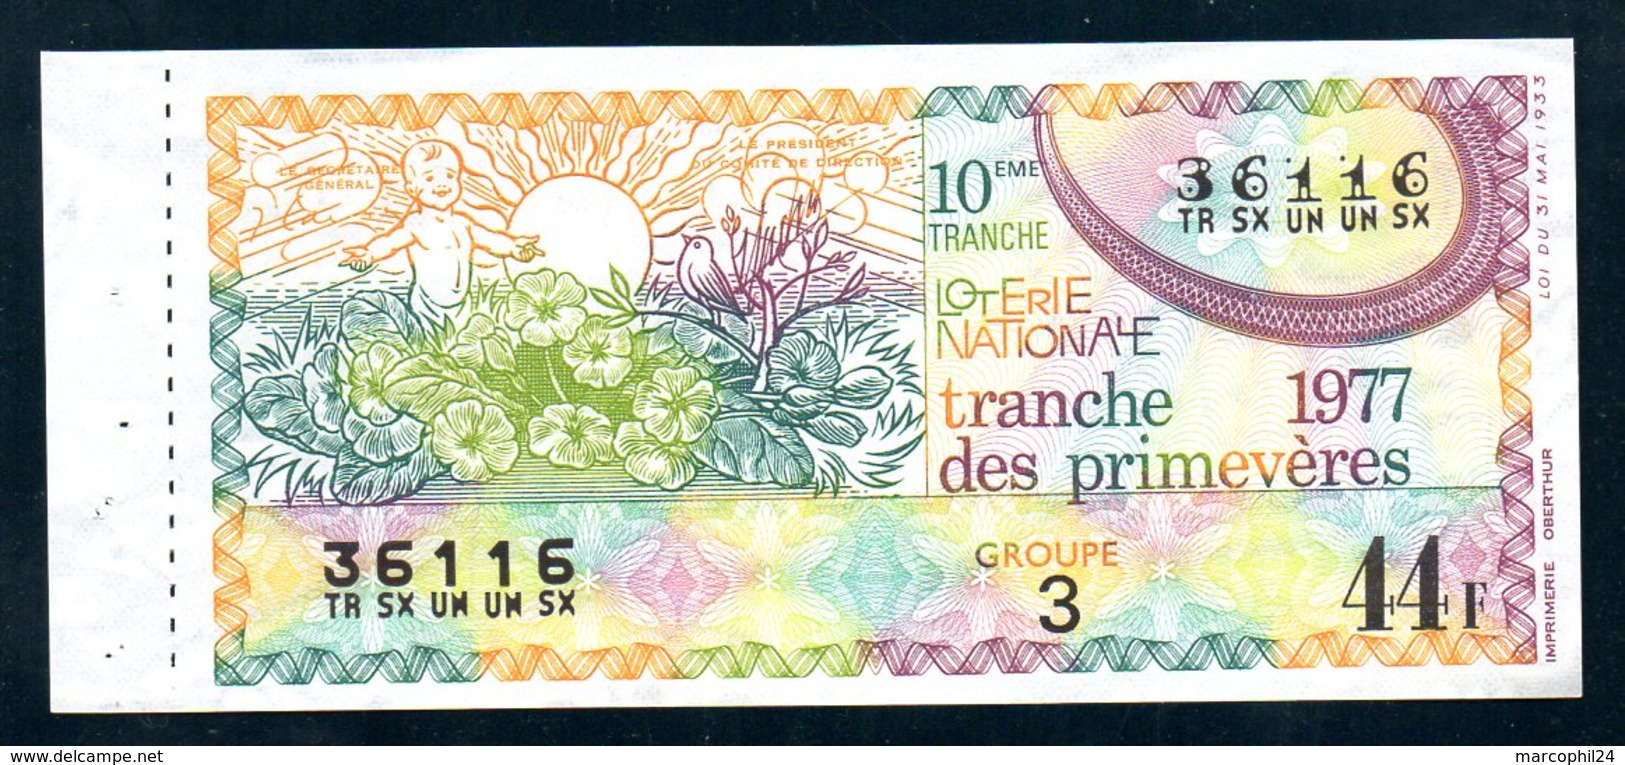 LOTERIE NATIONALE 1977 - TRANCHE N° 10 = PRIMEVERES ( FLEUR ) / BILLET ENTIER SUPERBE Complet De Sa Souche VOIR  2 SCAN - Lottery Tickets